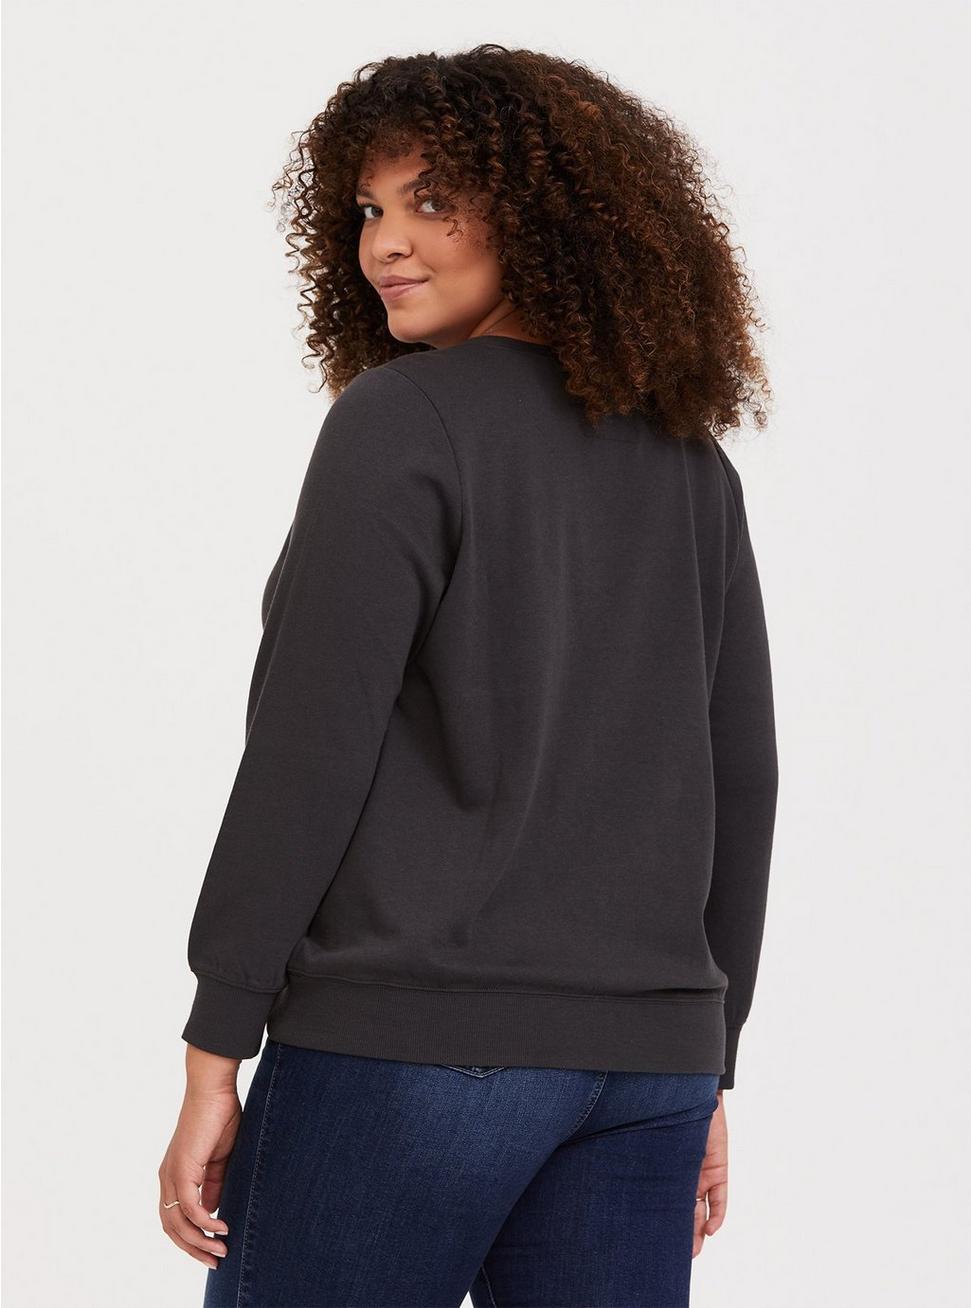 Plus Size - Queen Dark Grey Pullover Sweatshirt - Torrid